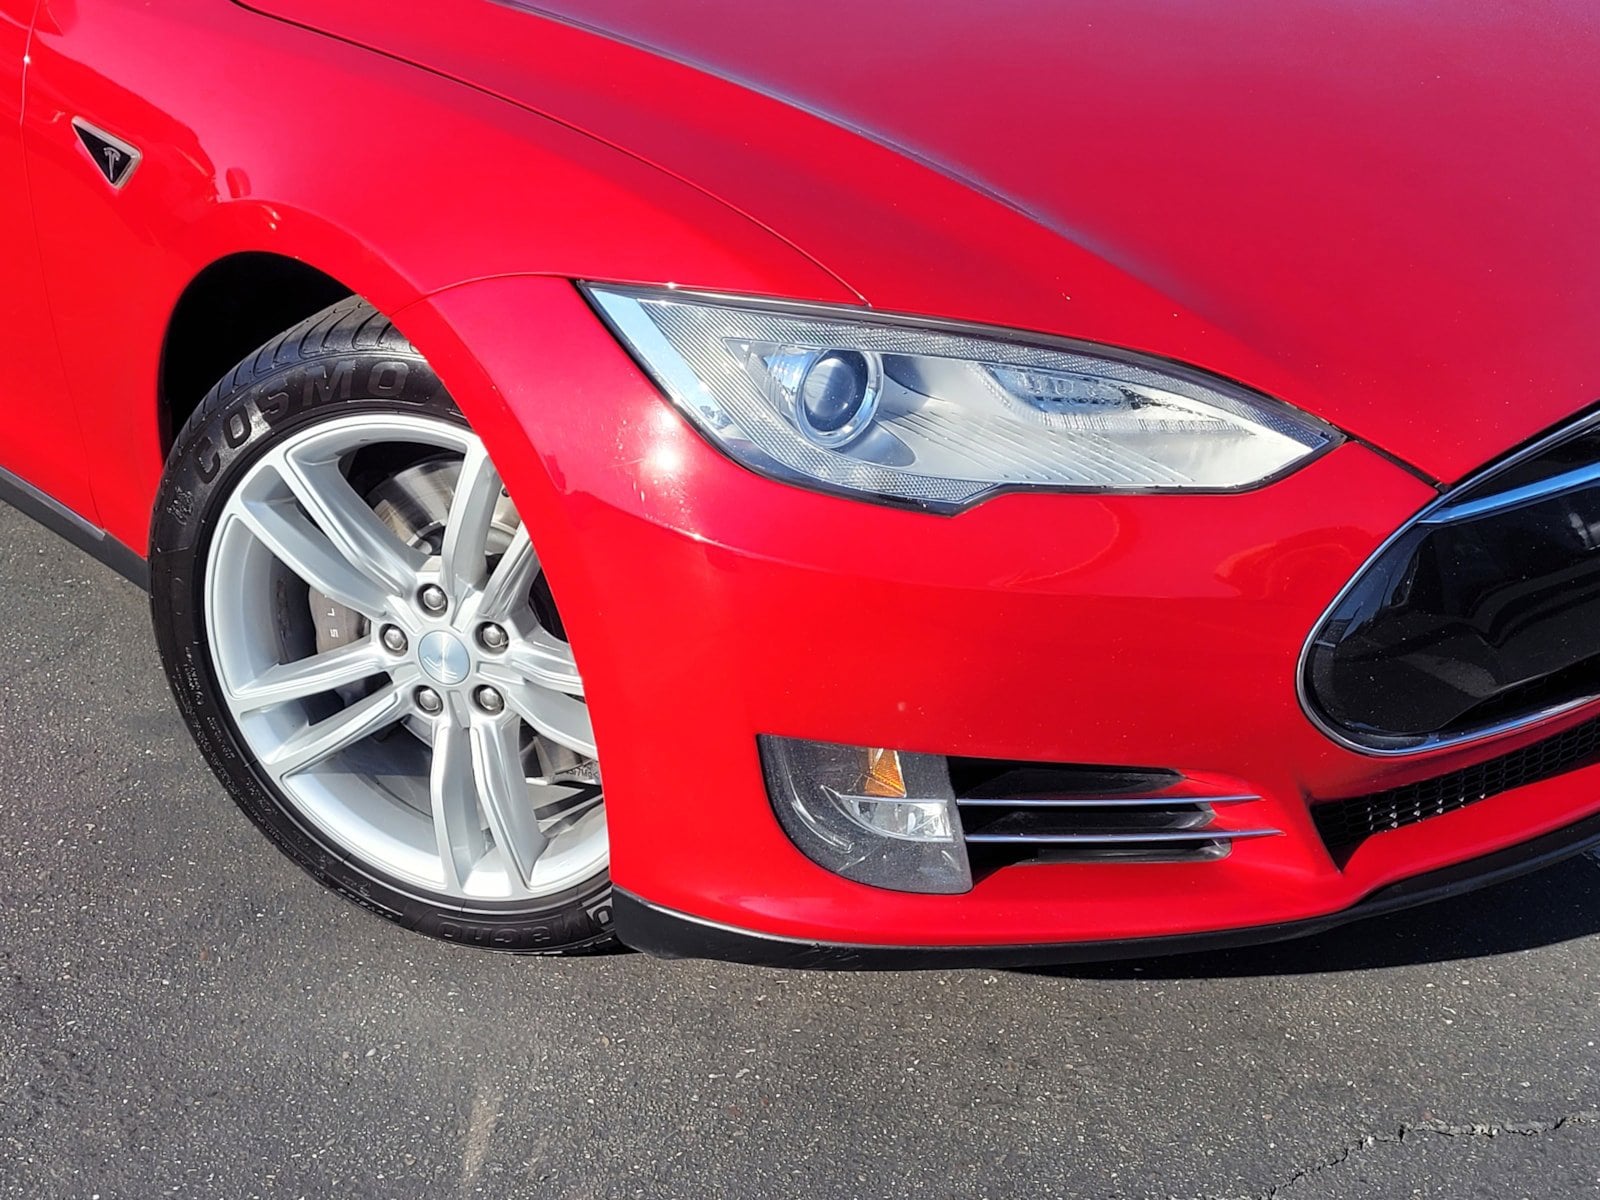 Used 2013 Tesla Model S S with VIN 5YJSA1CN4DFP10027 for sale in Manteca, CA